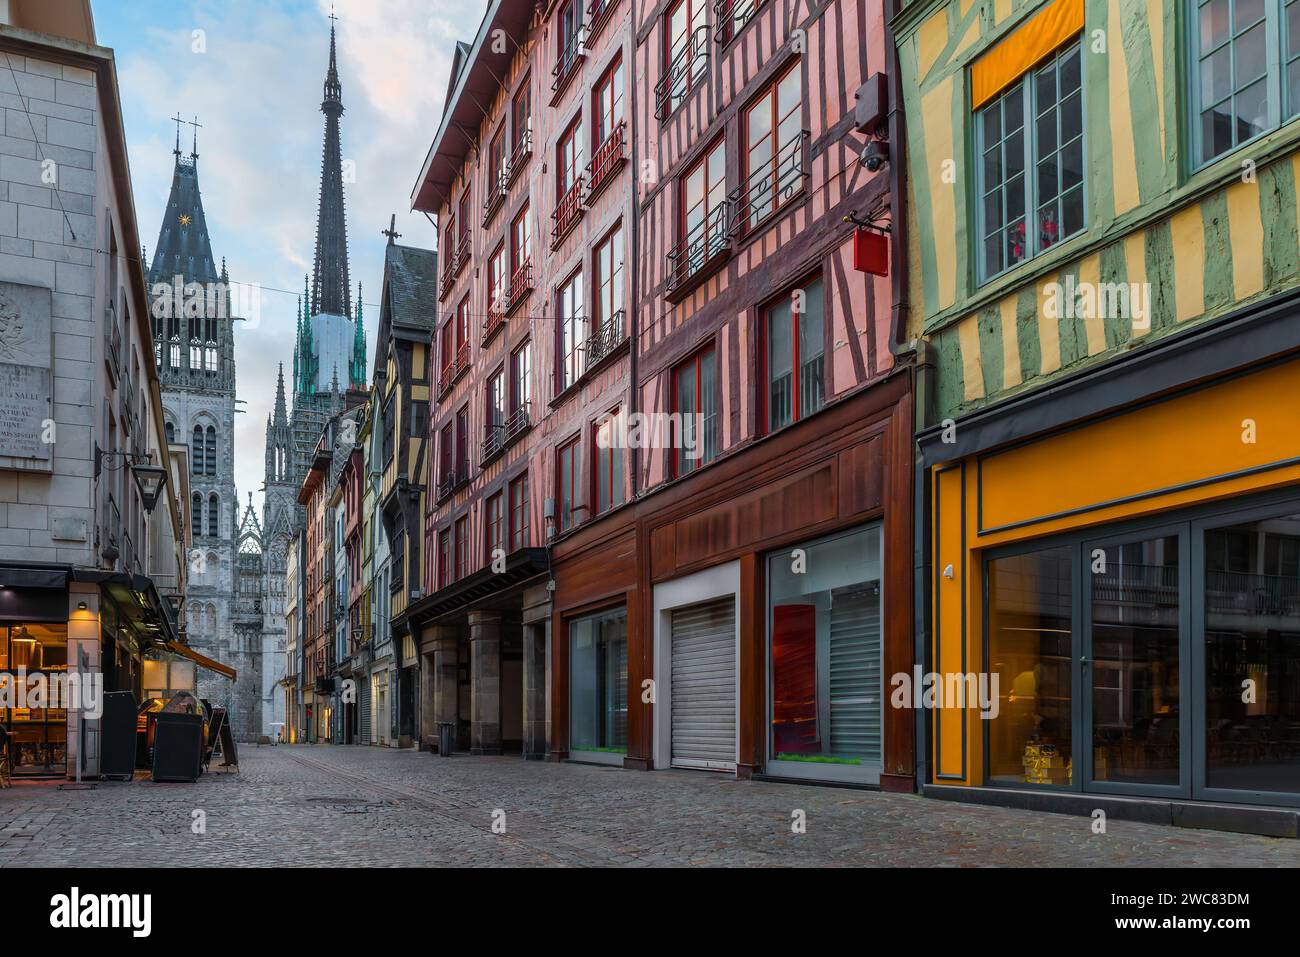 Accogliente strada medievale con tipiche case in legno e cattedrale gotica nella città vecchia di Rouen, Normandia, Francia. Architettura e punti di riferimento di Foto Stock